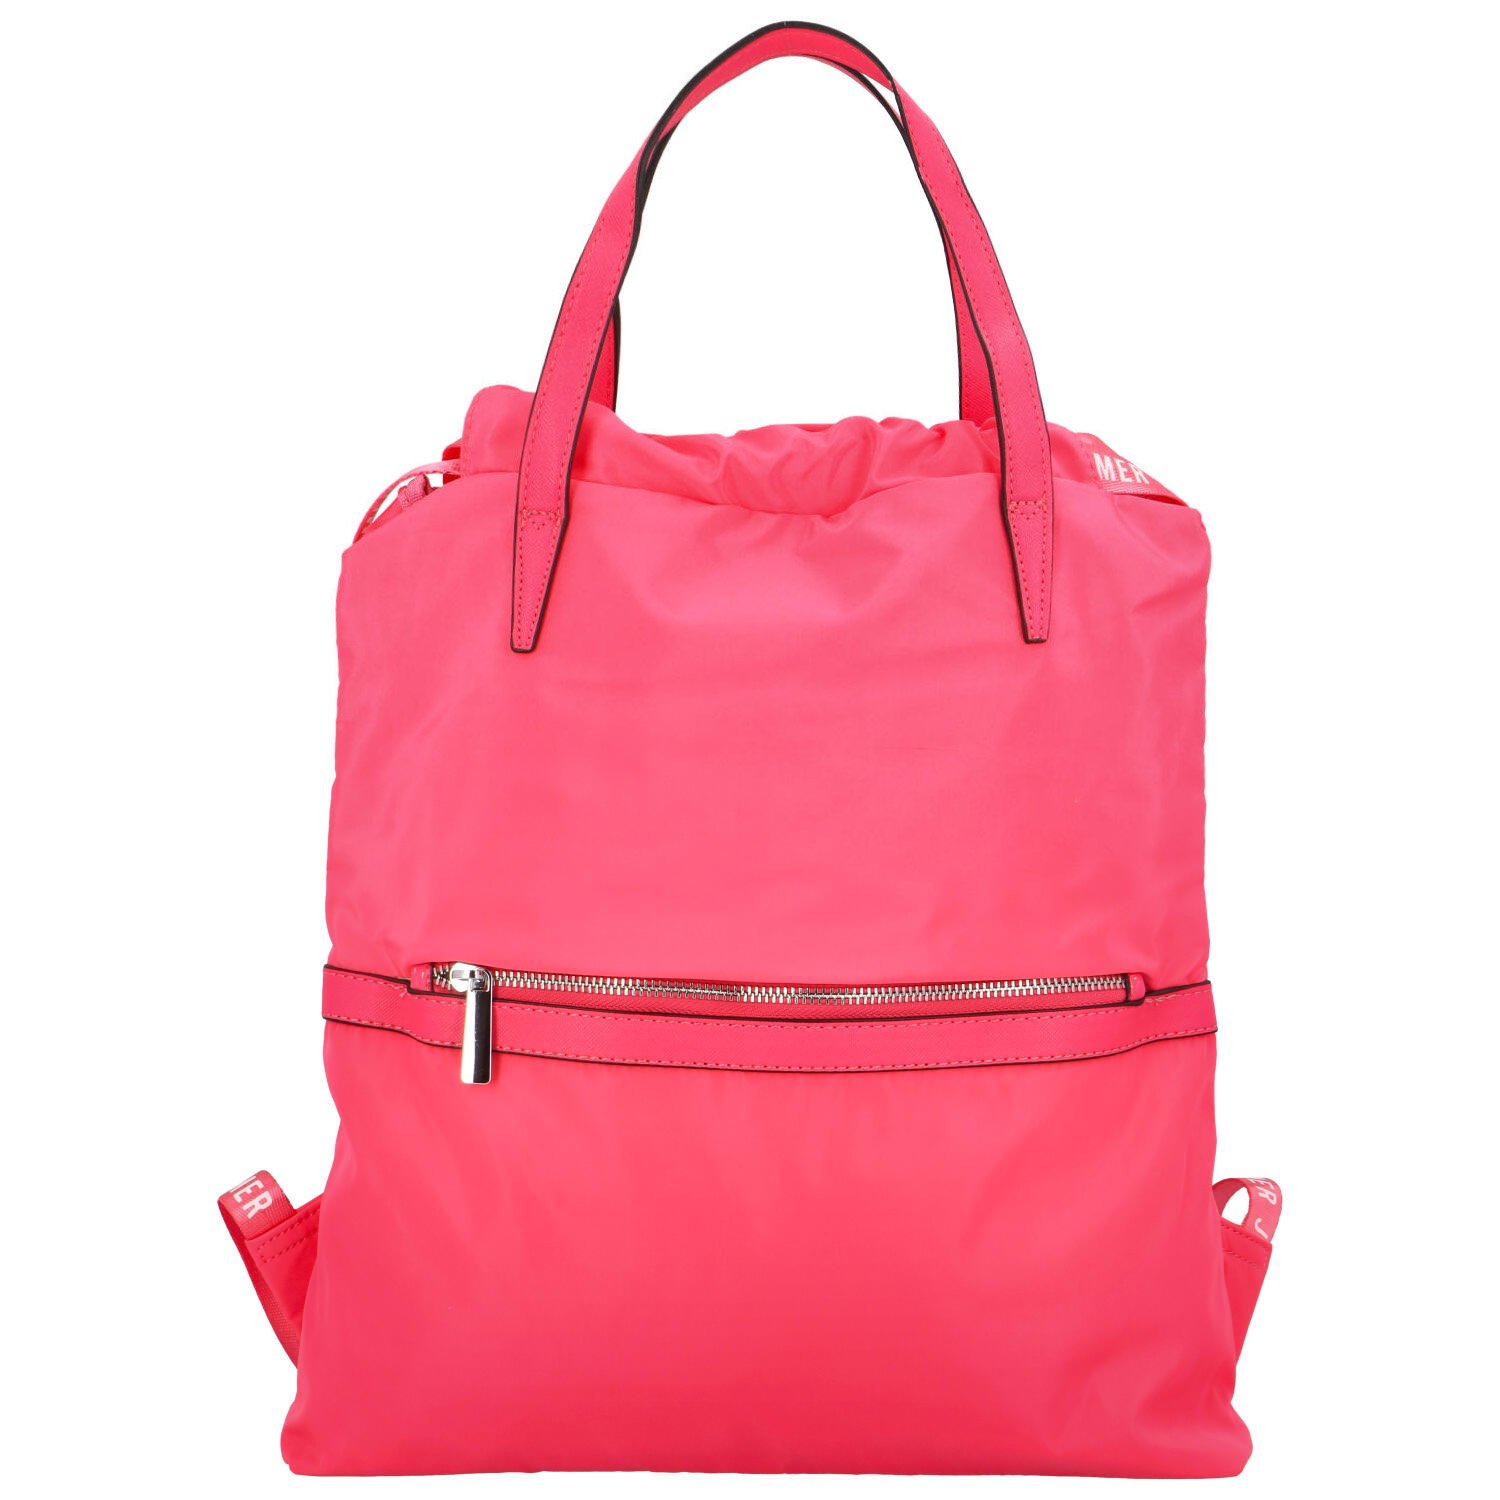 Praktický dámský batoh Dunero, výrazná růžová.